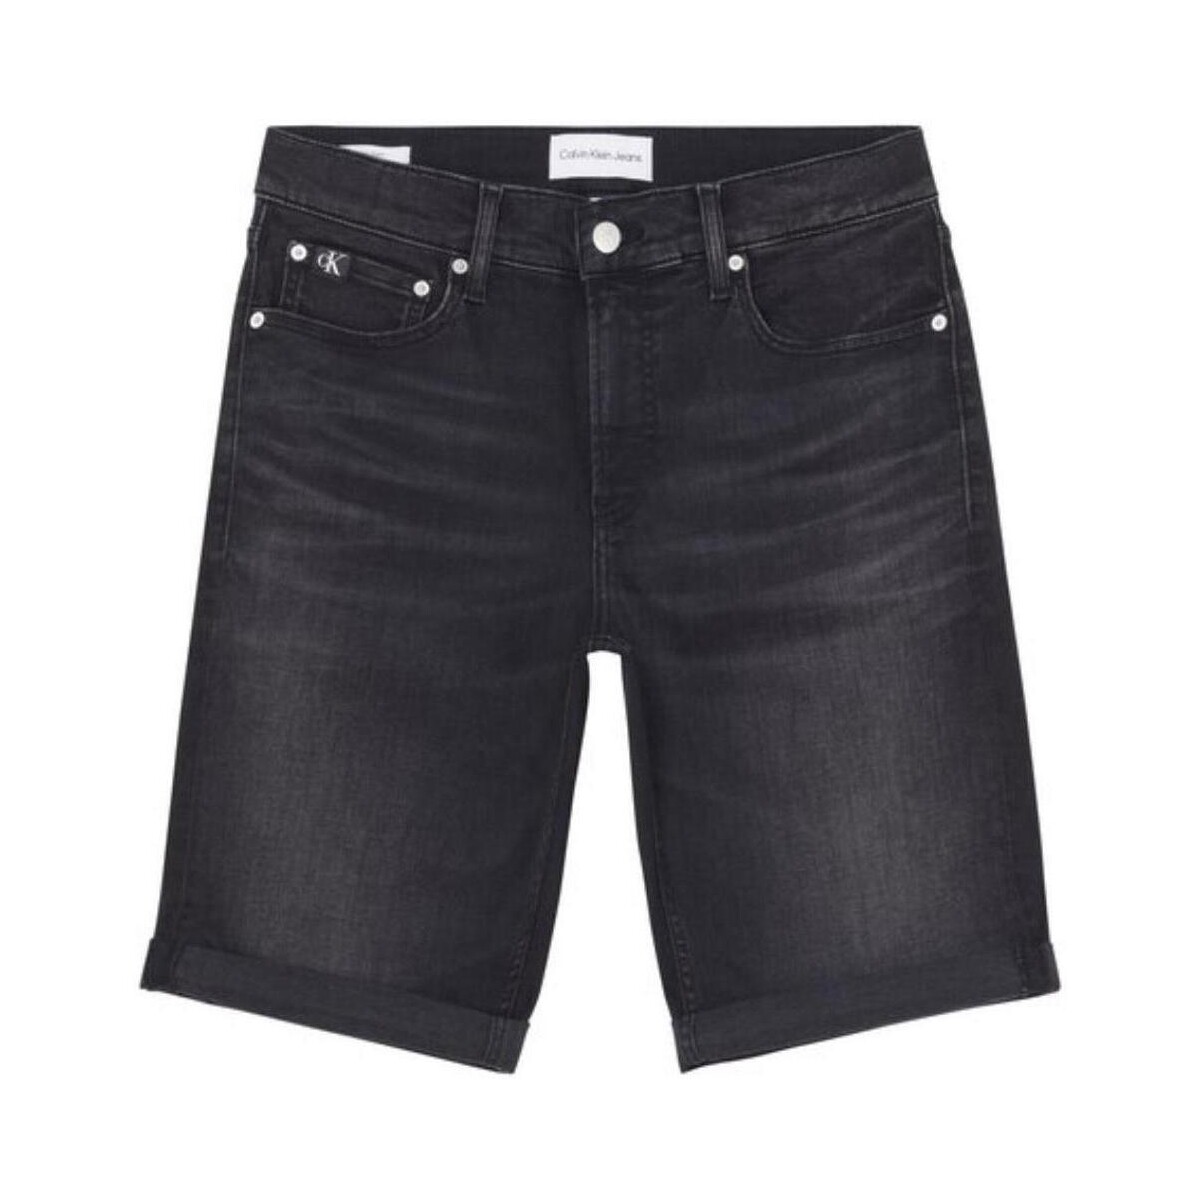 Îmbracaminte Bărbați Pantaloni scurti și Bermuda Calvin Klein Jeans  Negru